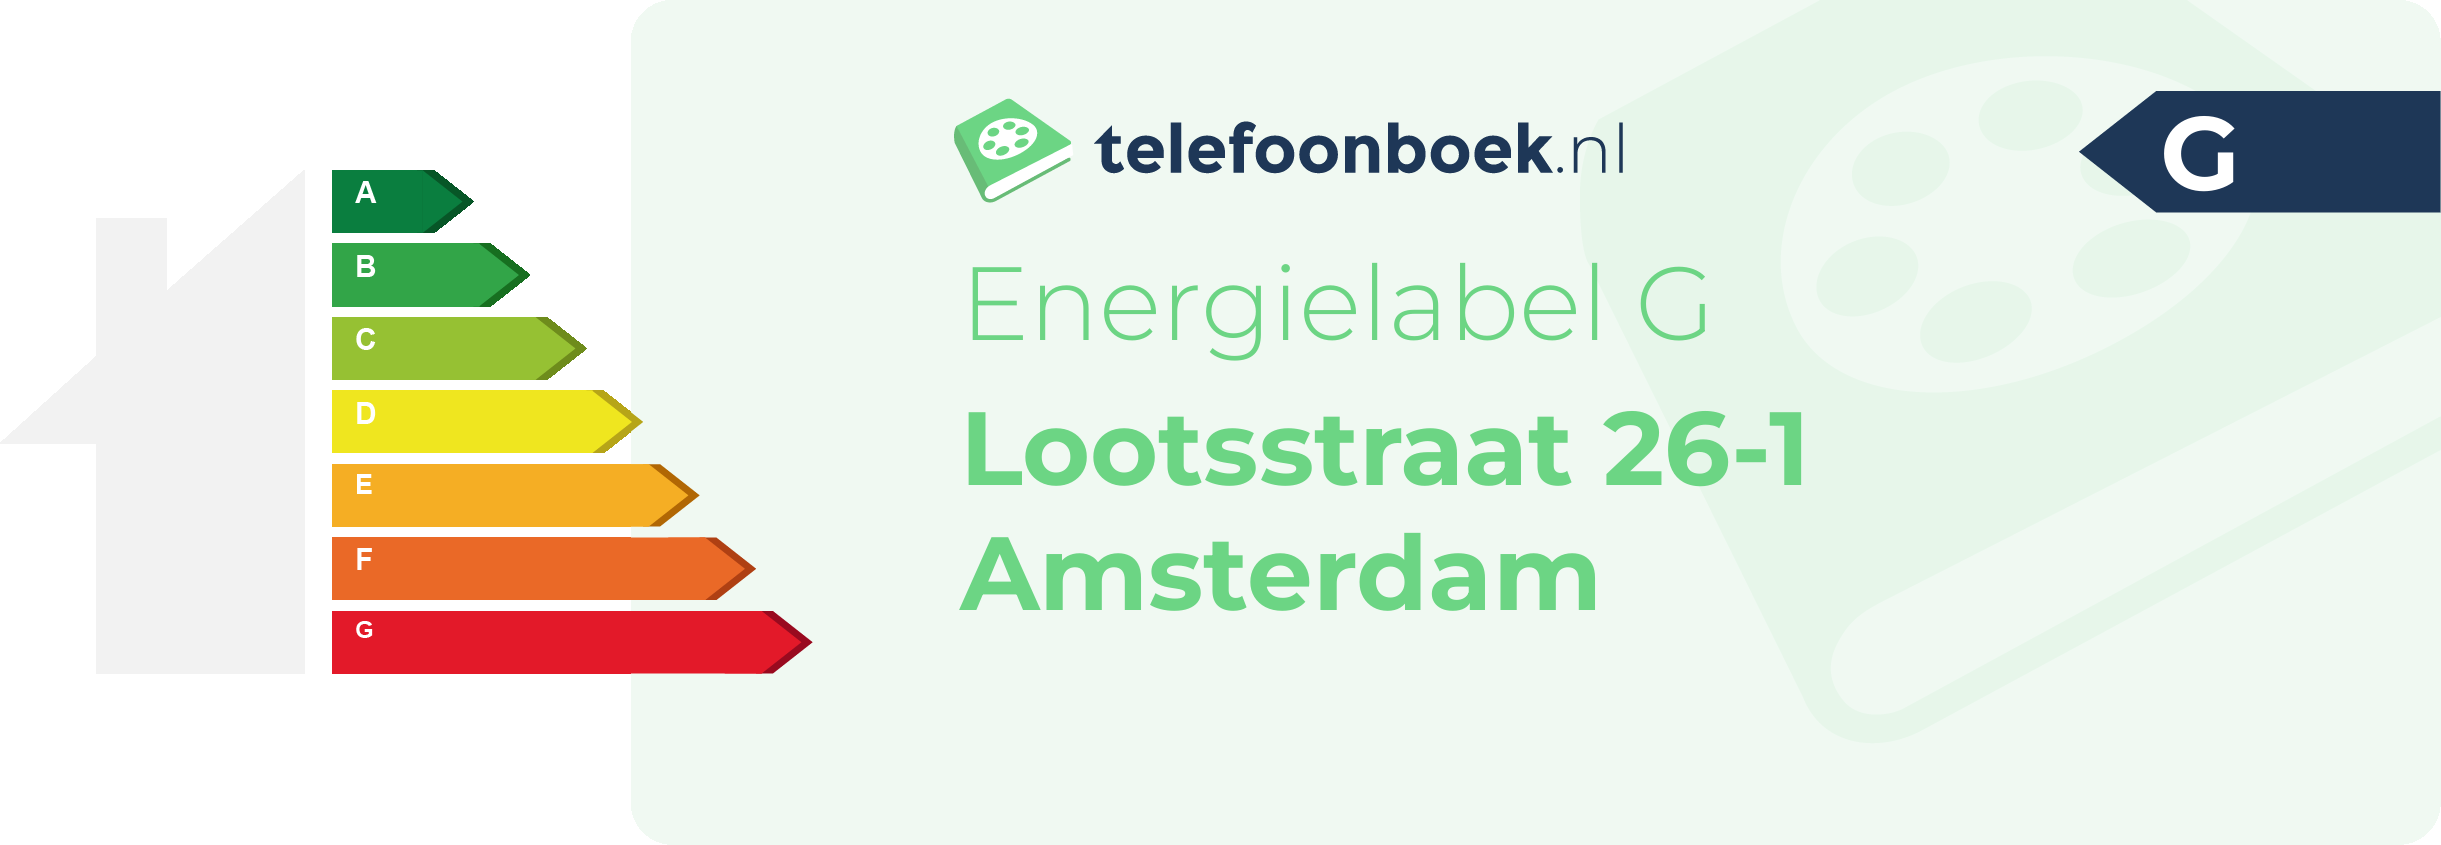 Energielabel Lootsstraat 26-1 Amsterdam